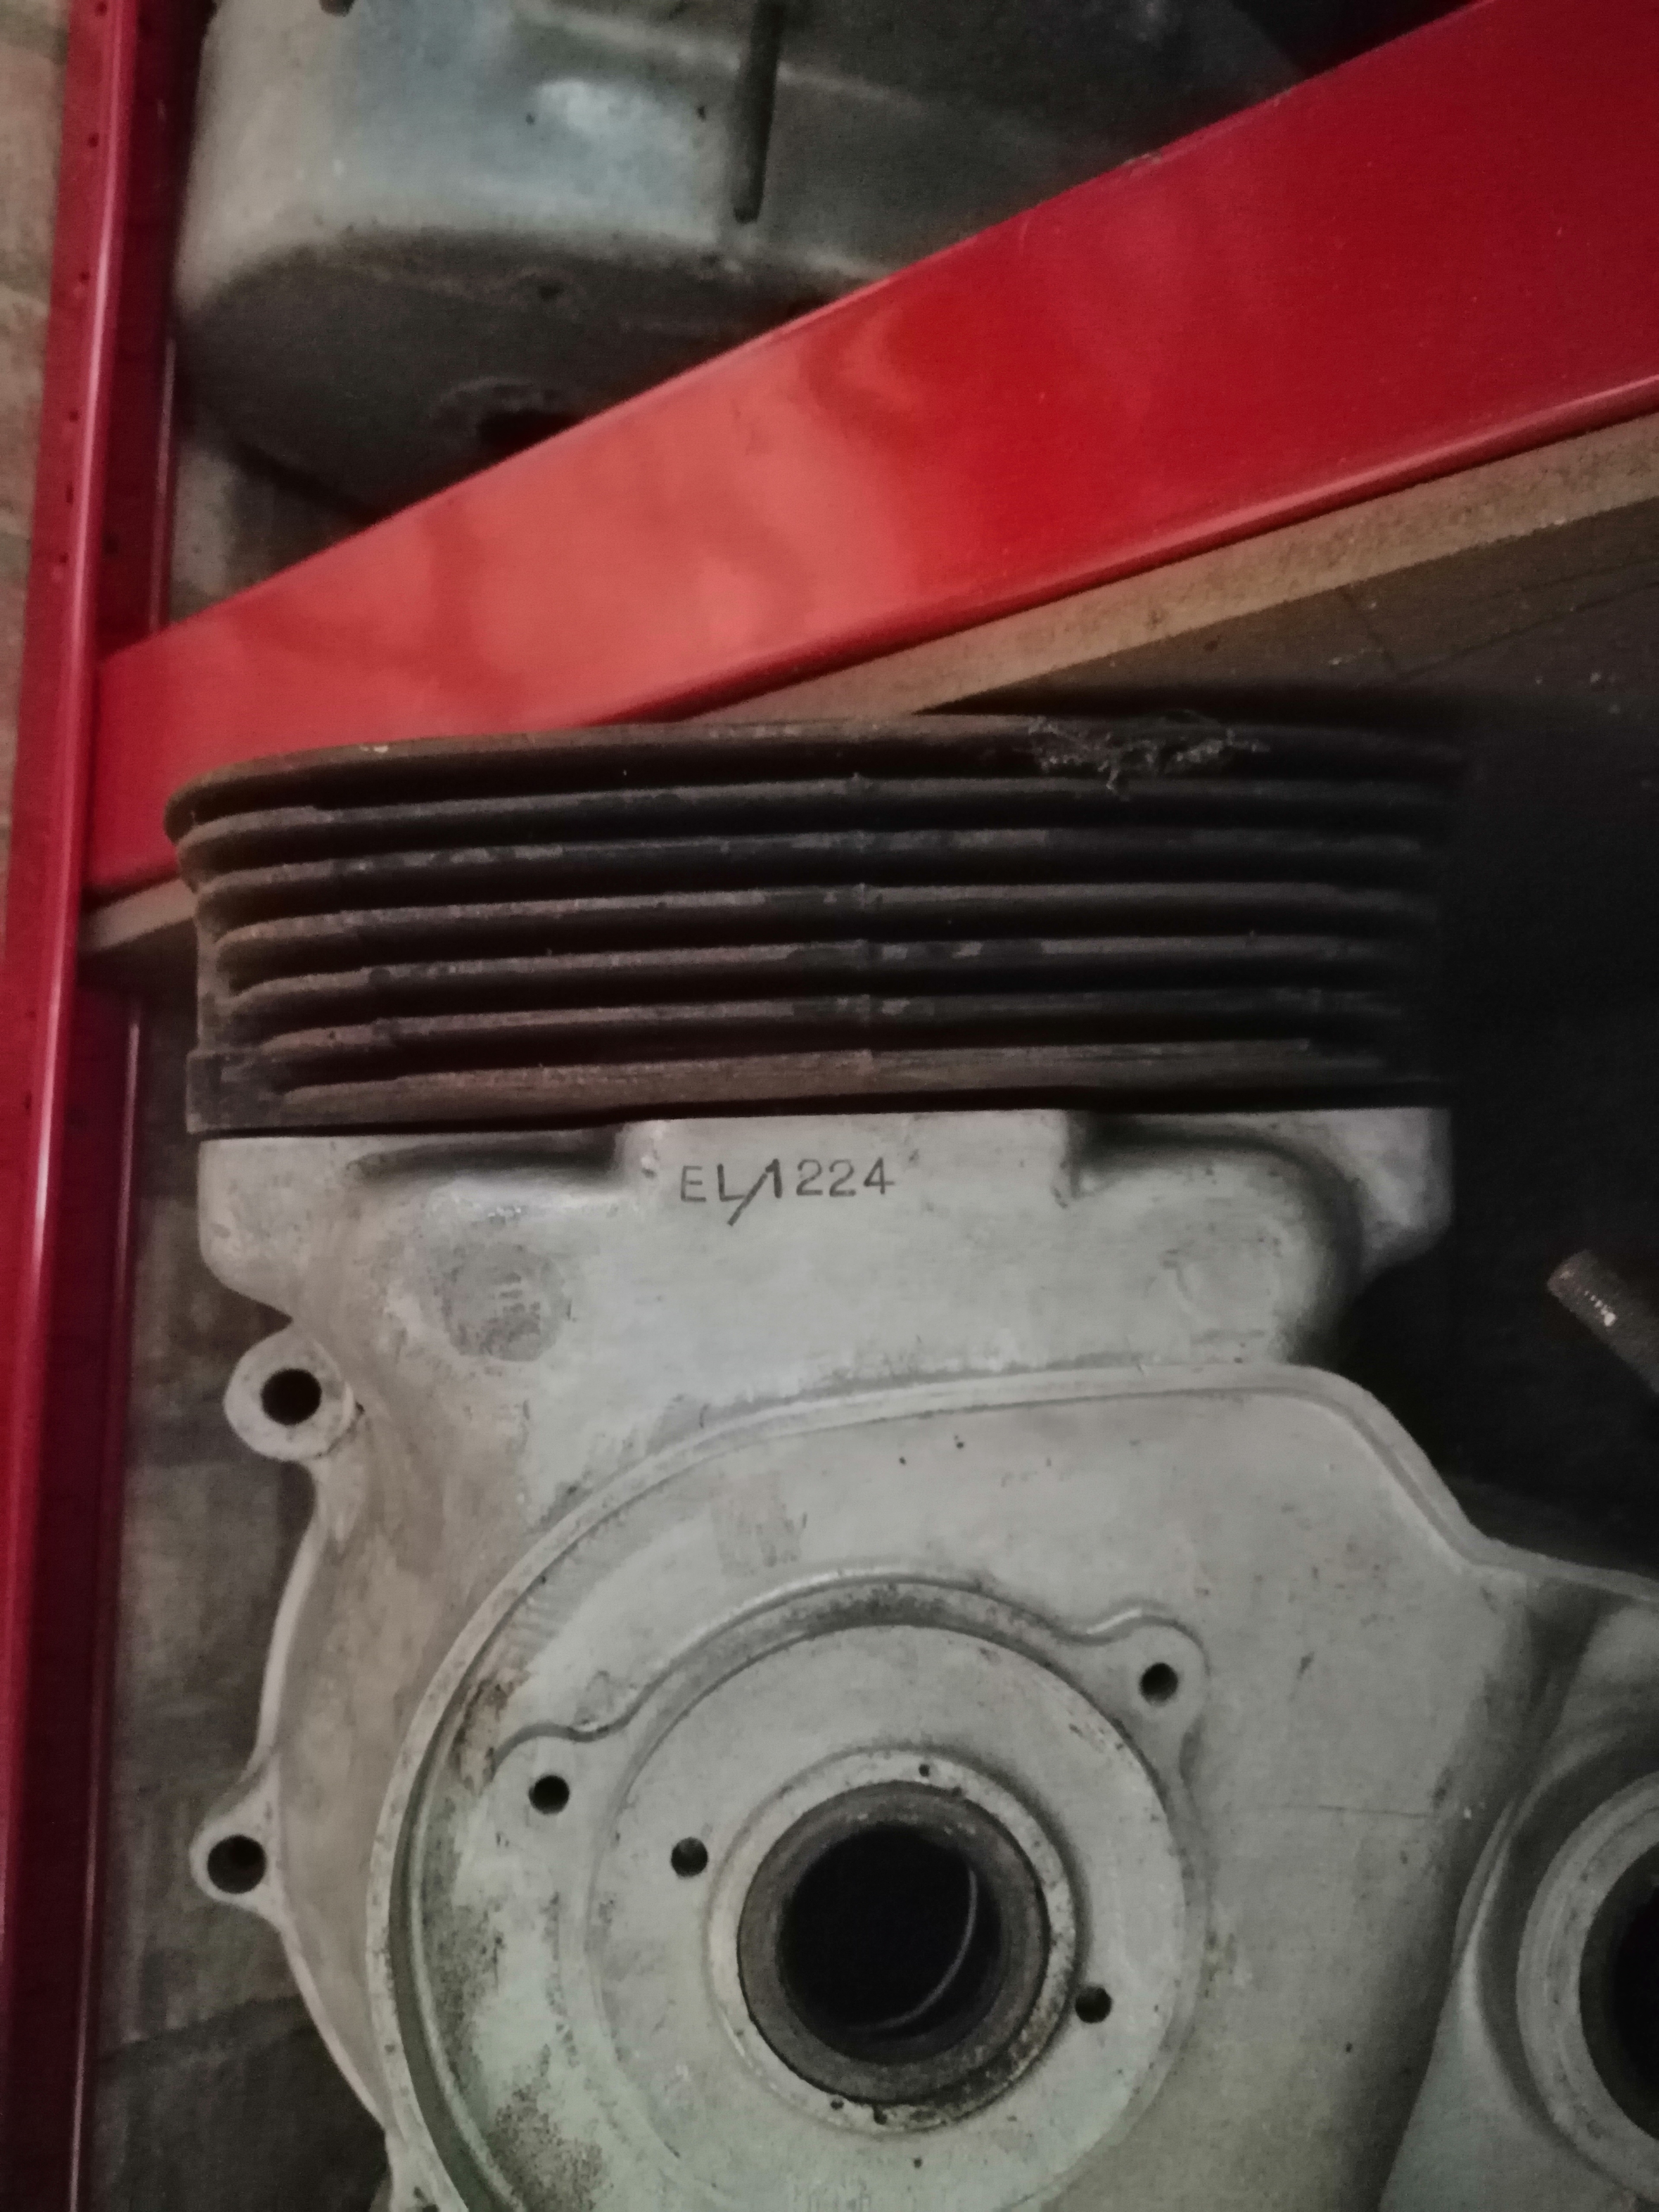 Engine number